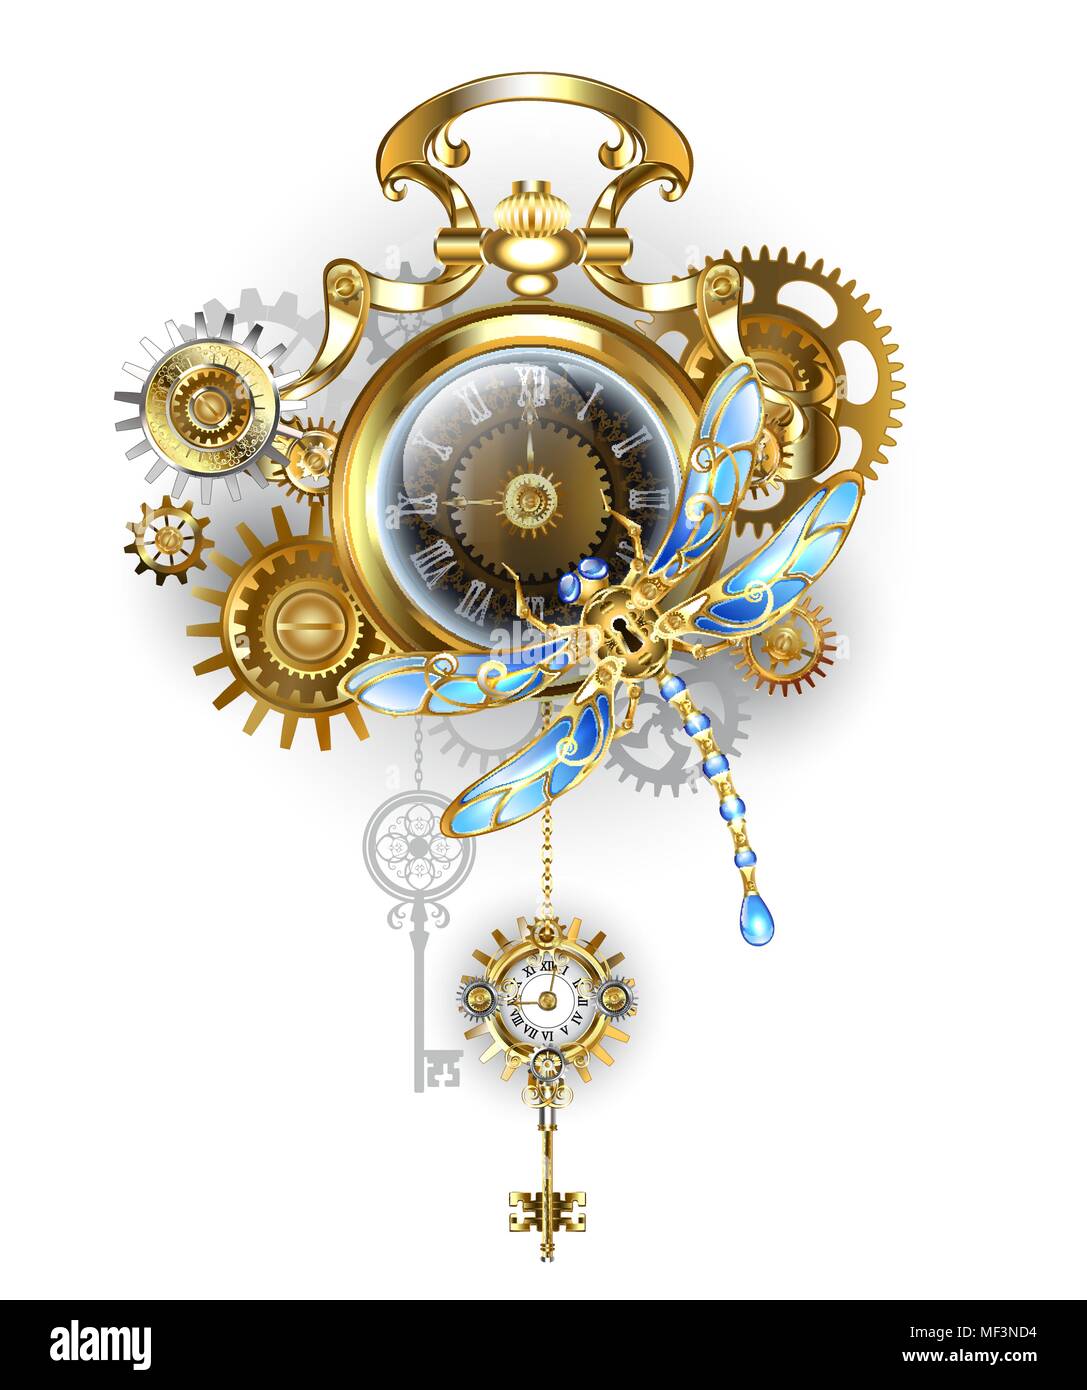 Meubles anciens, montre en or avec dark Steampunk horloge mécanique avec libellule, laiton et d'or sur fond blanc. Style Steampunk. Illustration de Vecteur